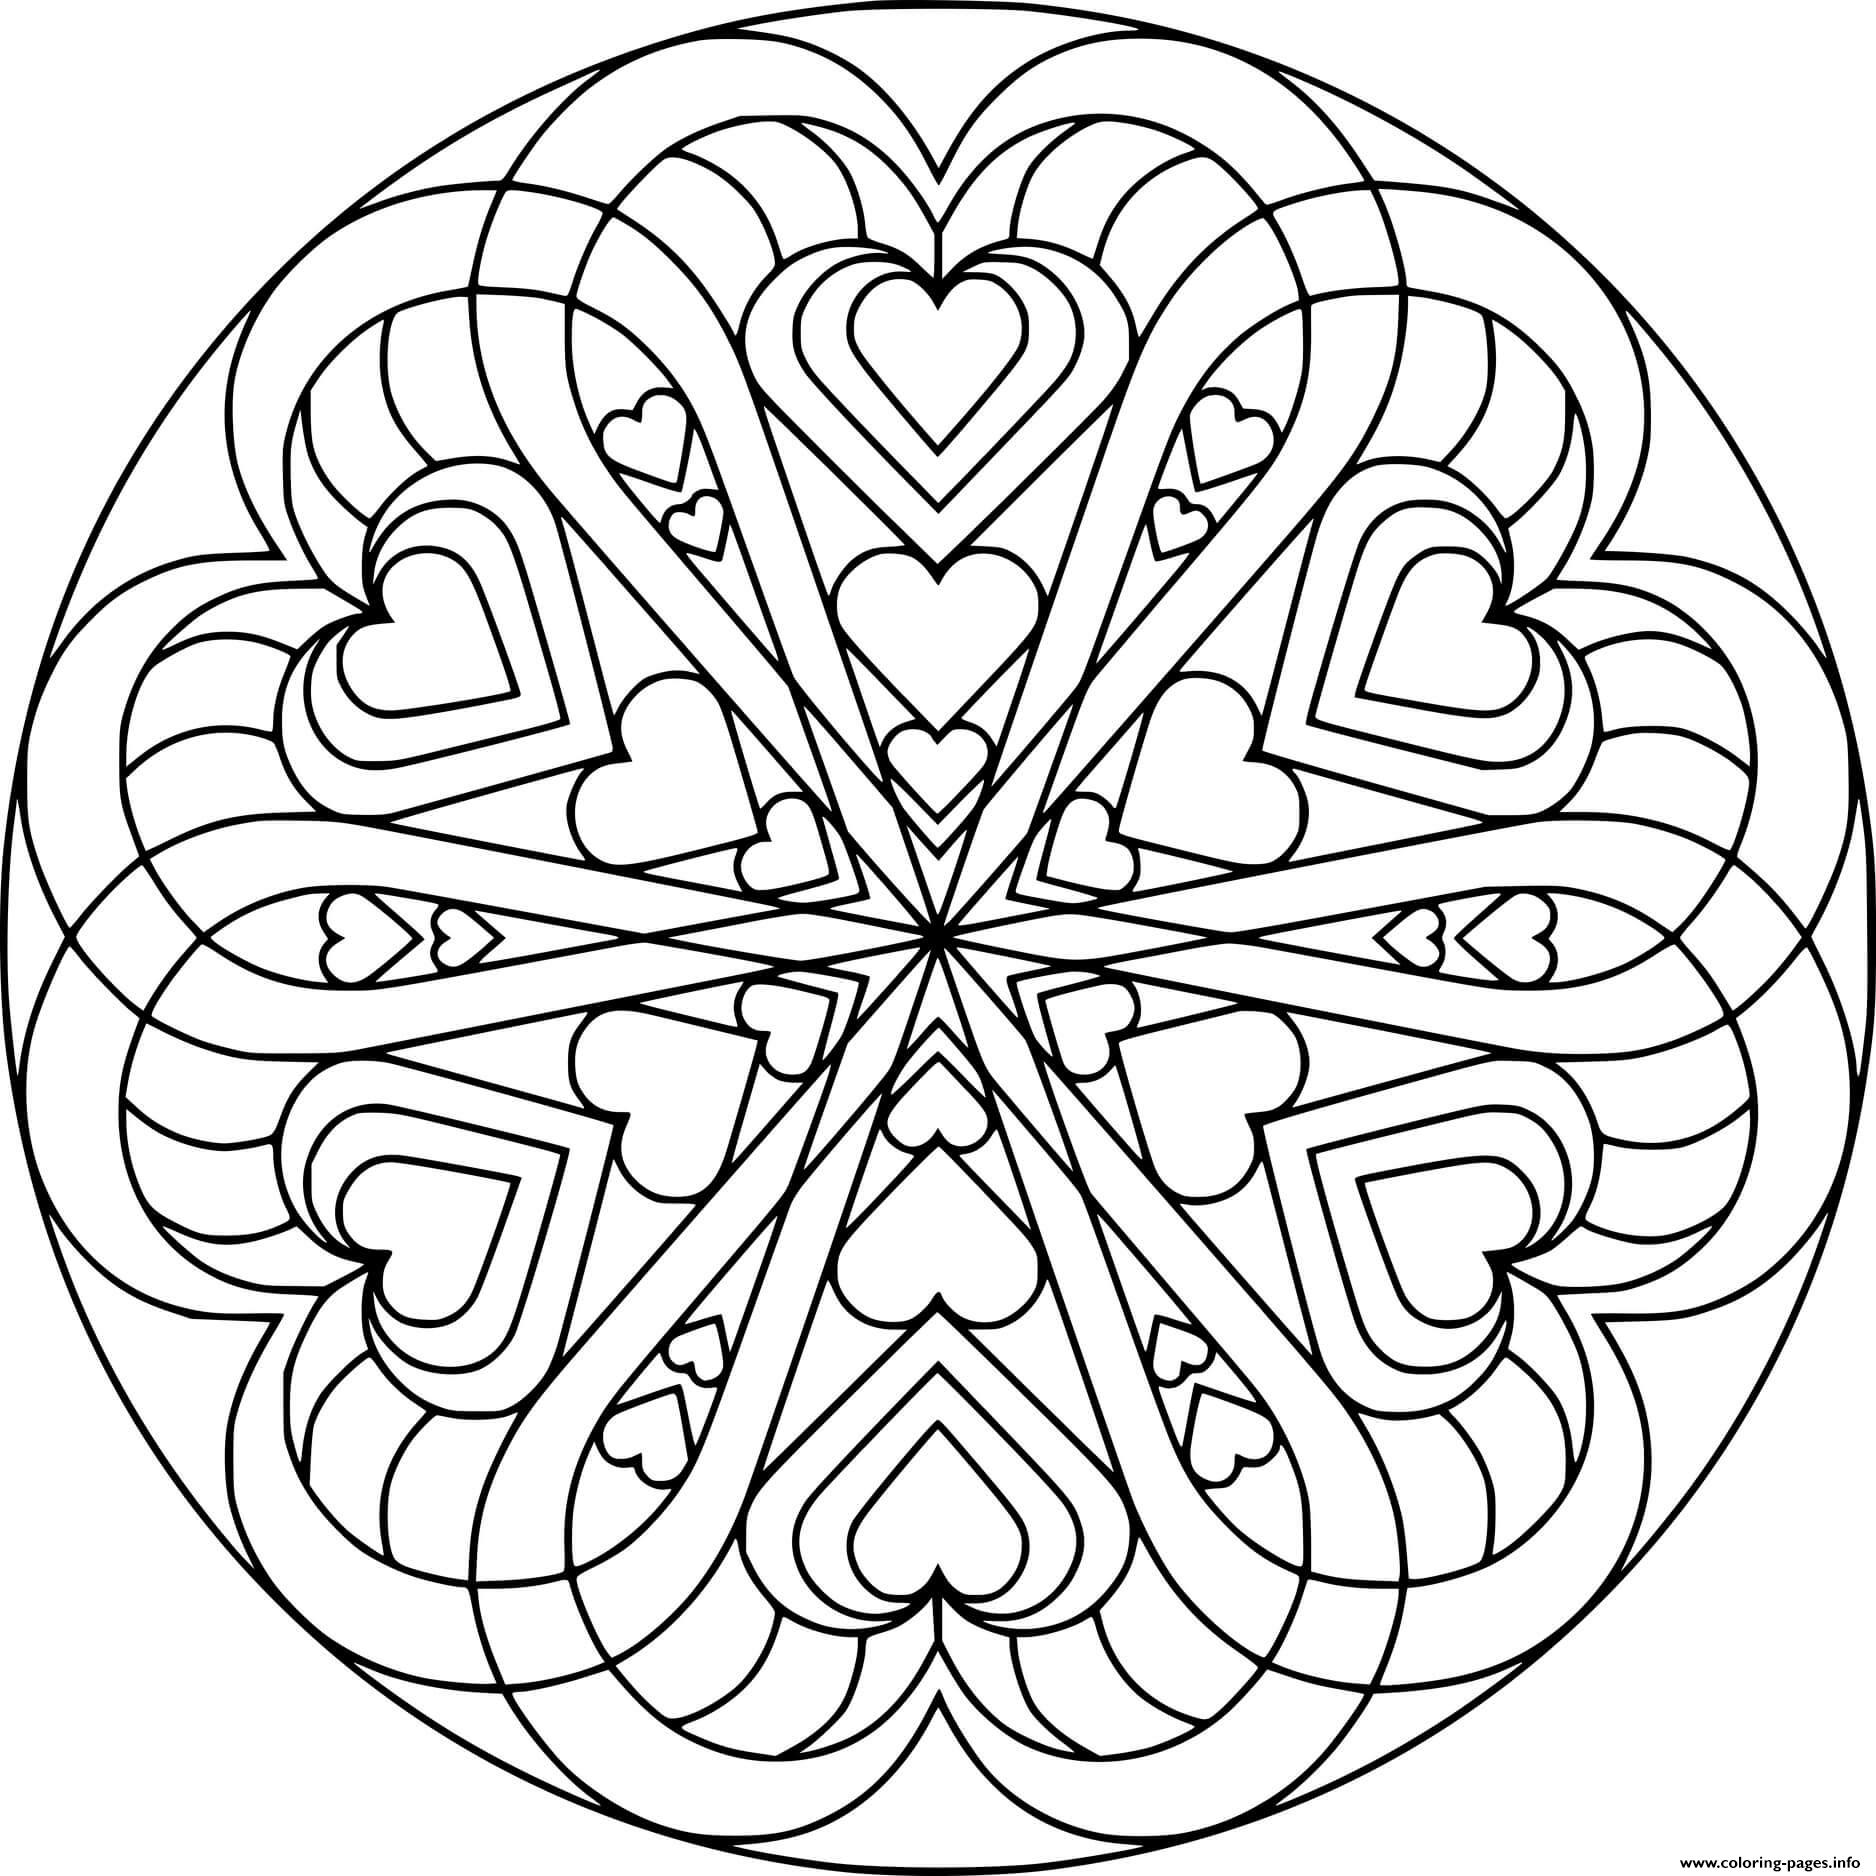 Hearts Shaped A Circle coloring